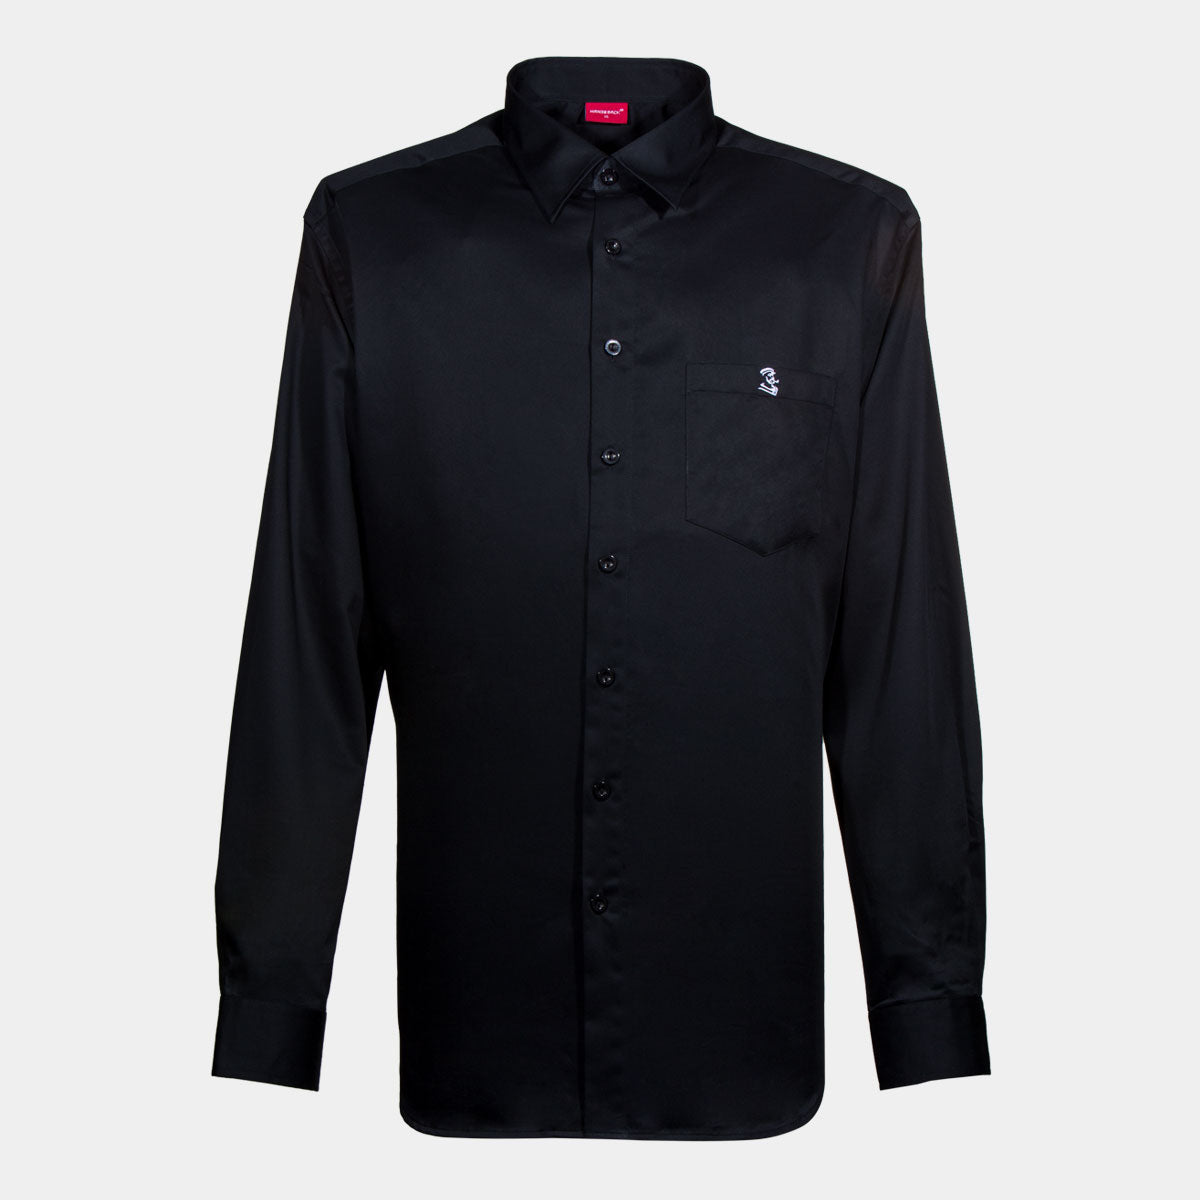 Hansesack Produktbild schwarzes Business-Hemd mit Brusttasche seidig glänzend von vorne